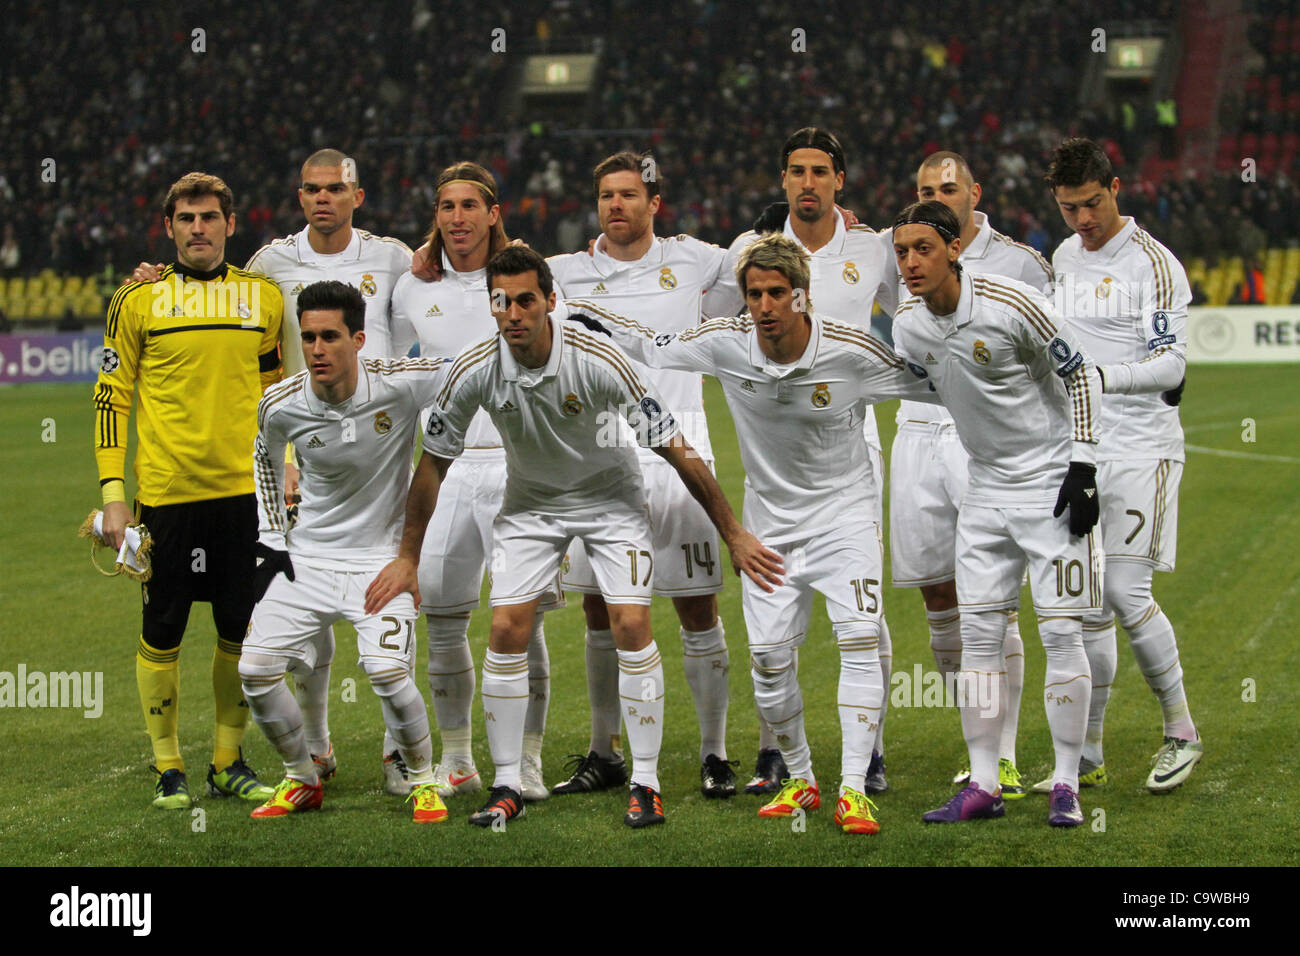 2012 год 23 мая. Команда Реал Мадрид 2012. Реал Мадрид 2011. Команда Реал Мадрид 2013. Реал Мадрид состав 2011-2012.